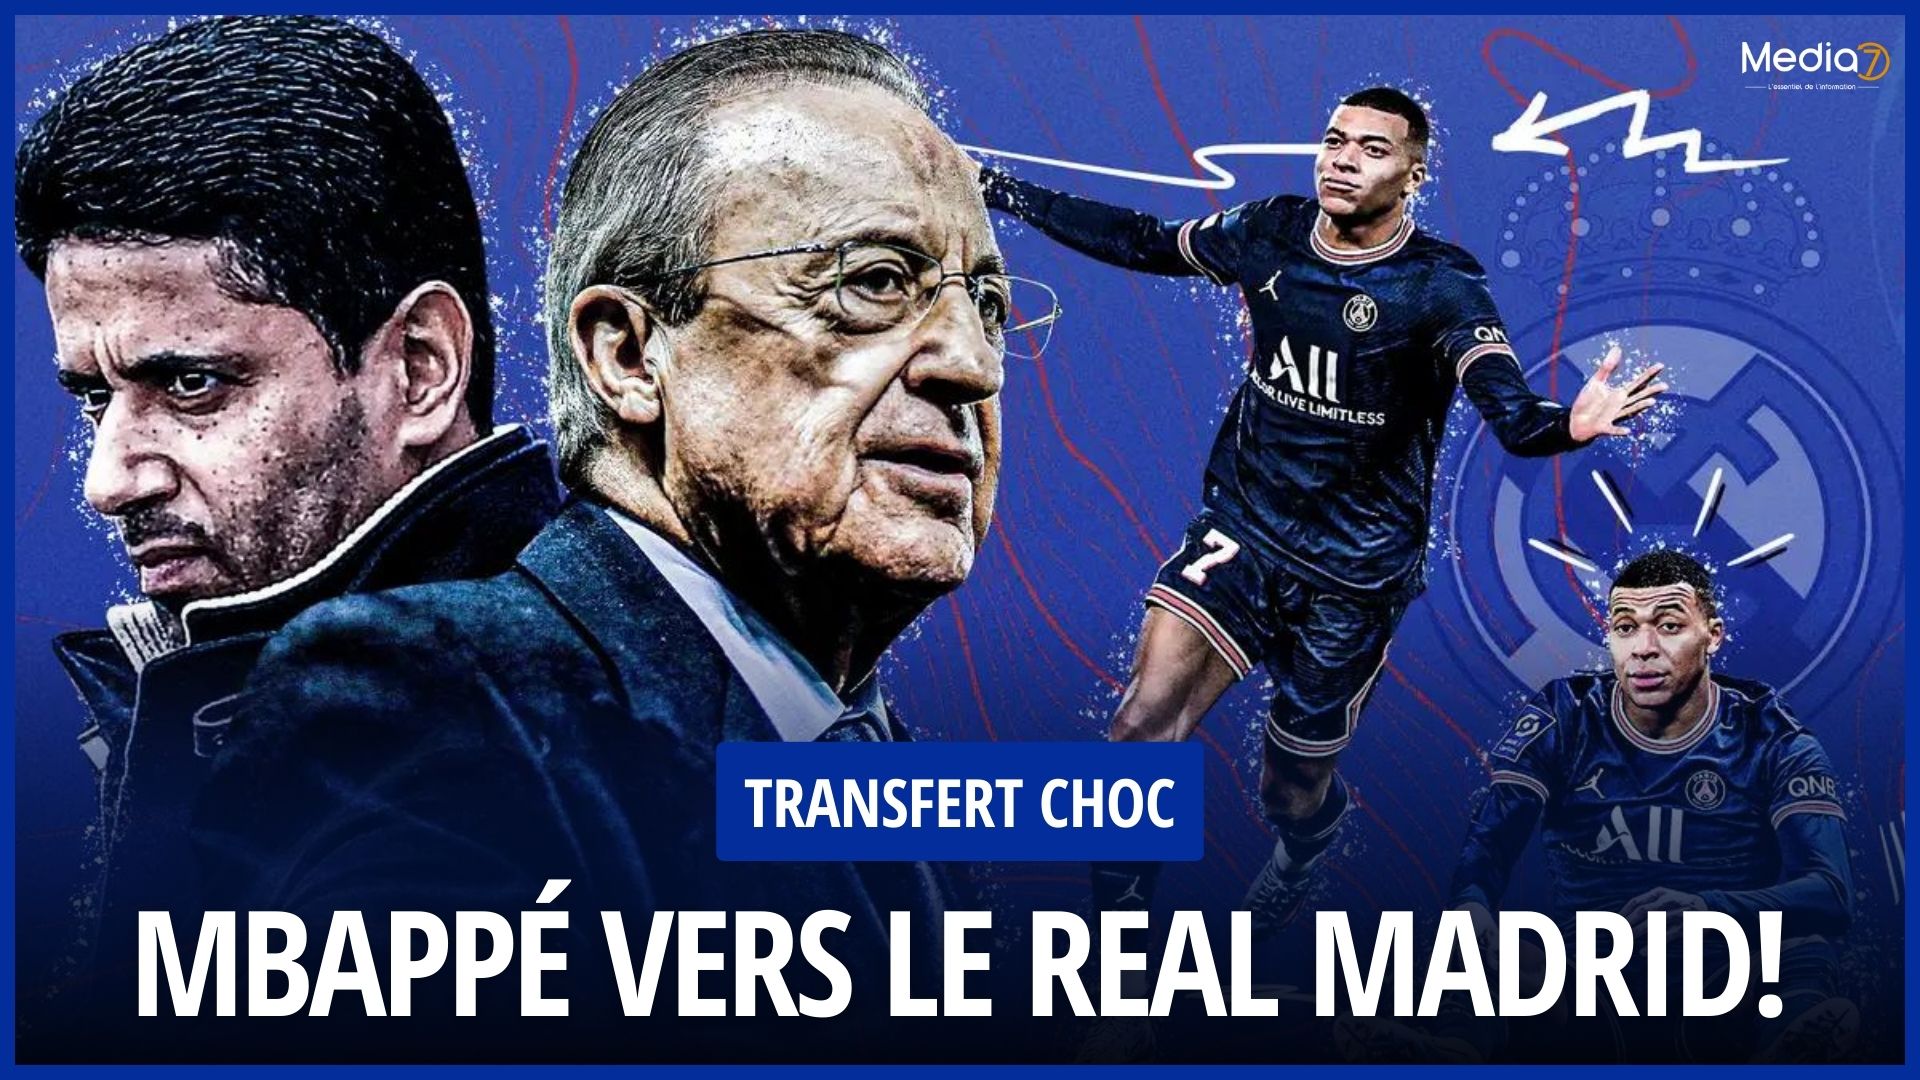 Shock Transfer: Kylian Mbappé Towards Real Madrid, Explosive Revelations from Bild - Media7